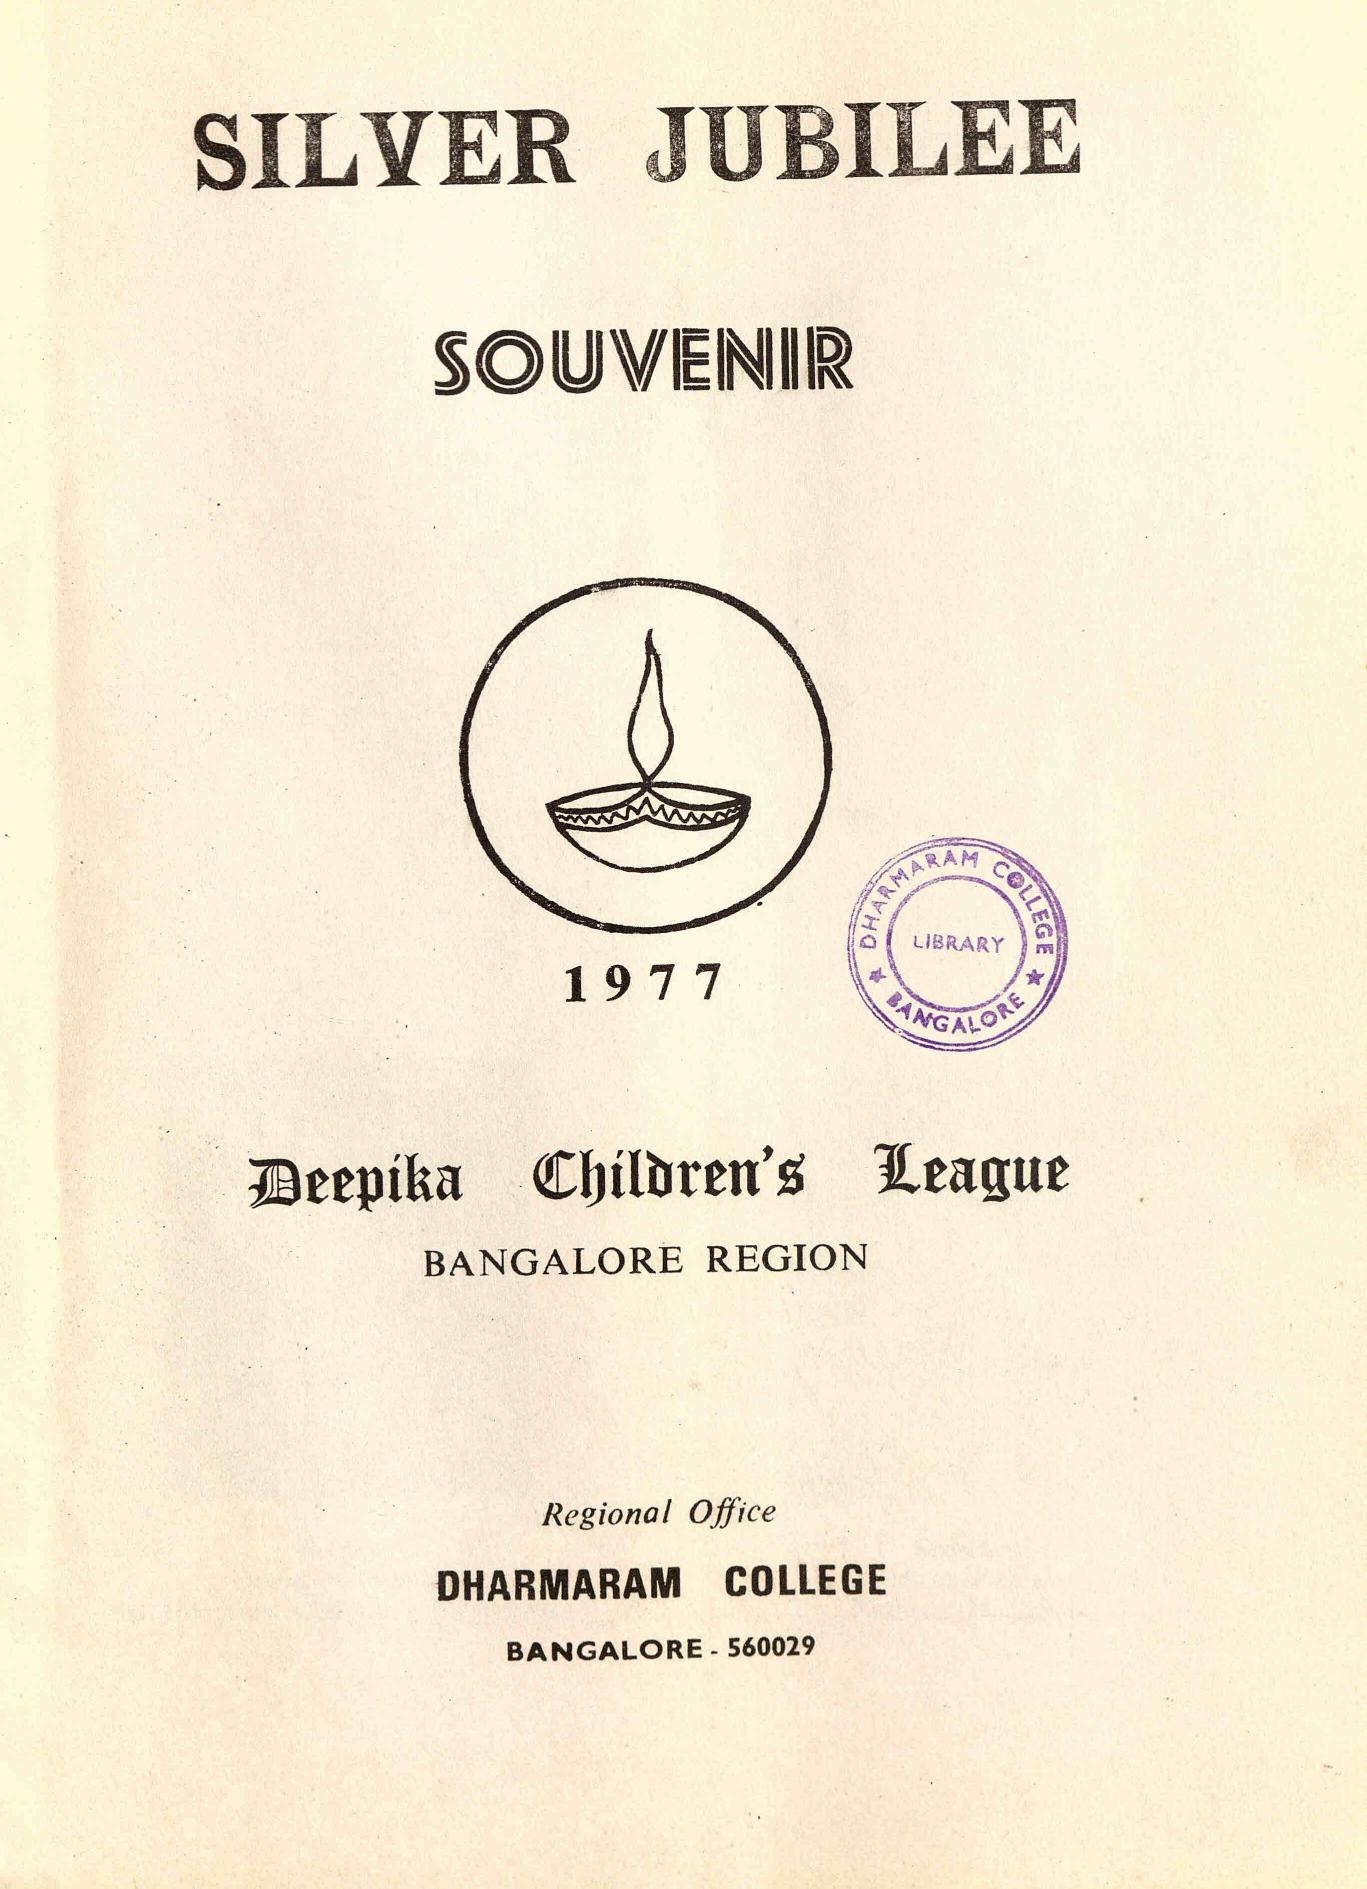  1977 - Deepika Childrens League - Bangalore Region souvenir